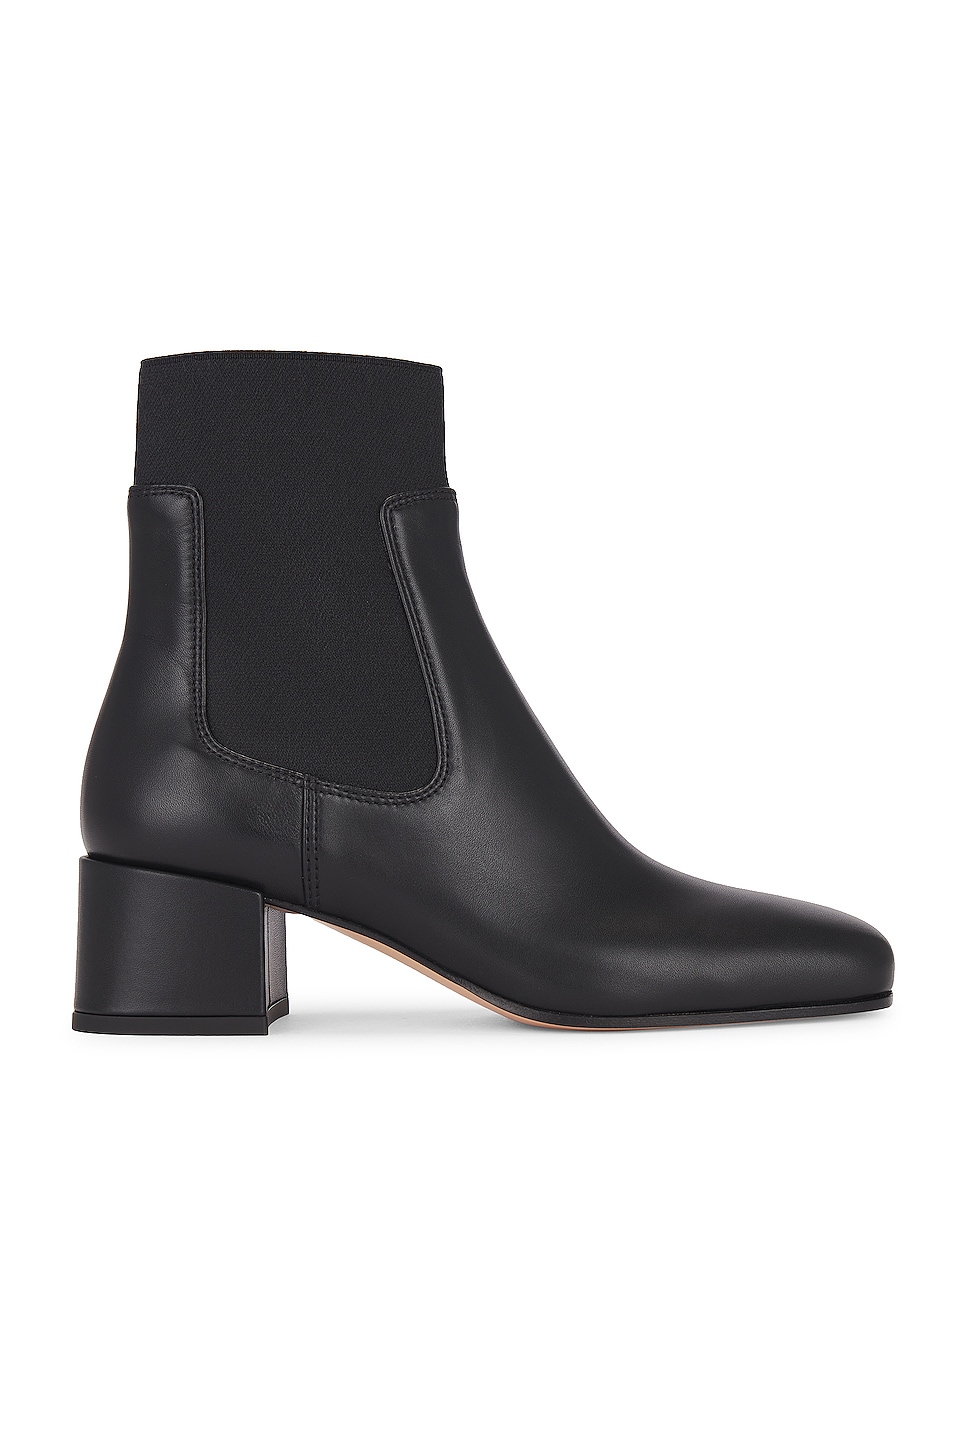 Image 1 of Gianvito Rossi Holmes Vitello Glove Boots in Black